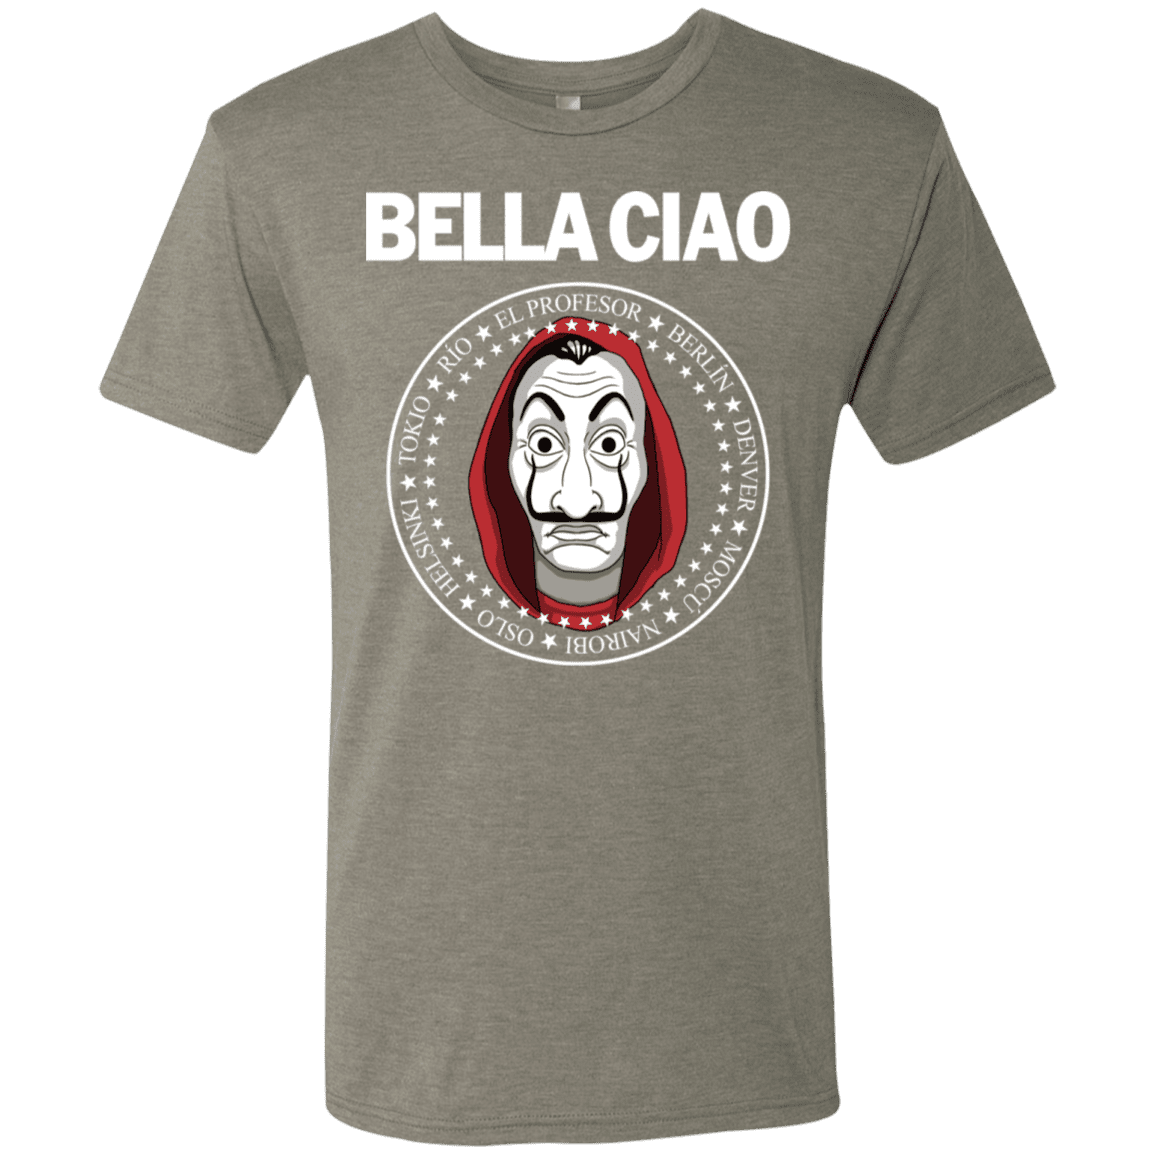 T-Shirts Venetian Grey / S Bella Ciao Men's Triblend T-Shirt